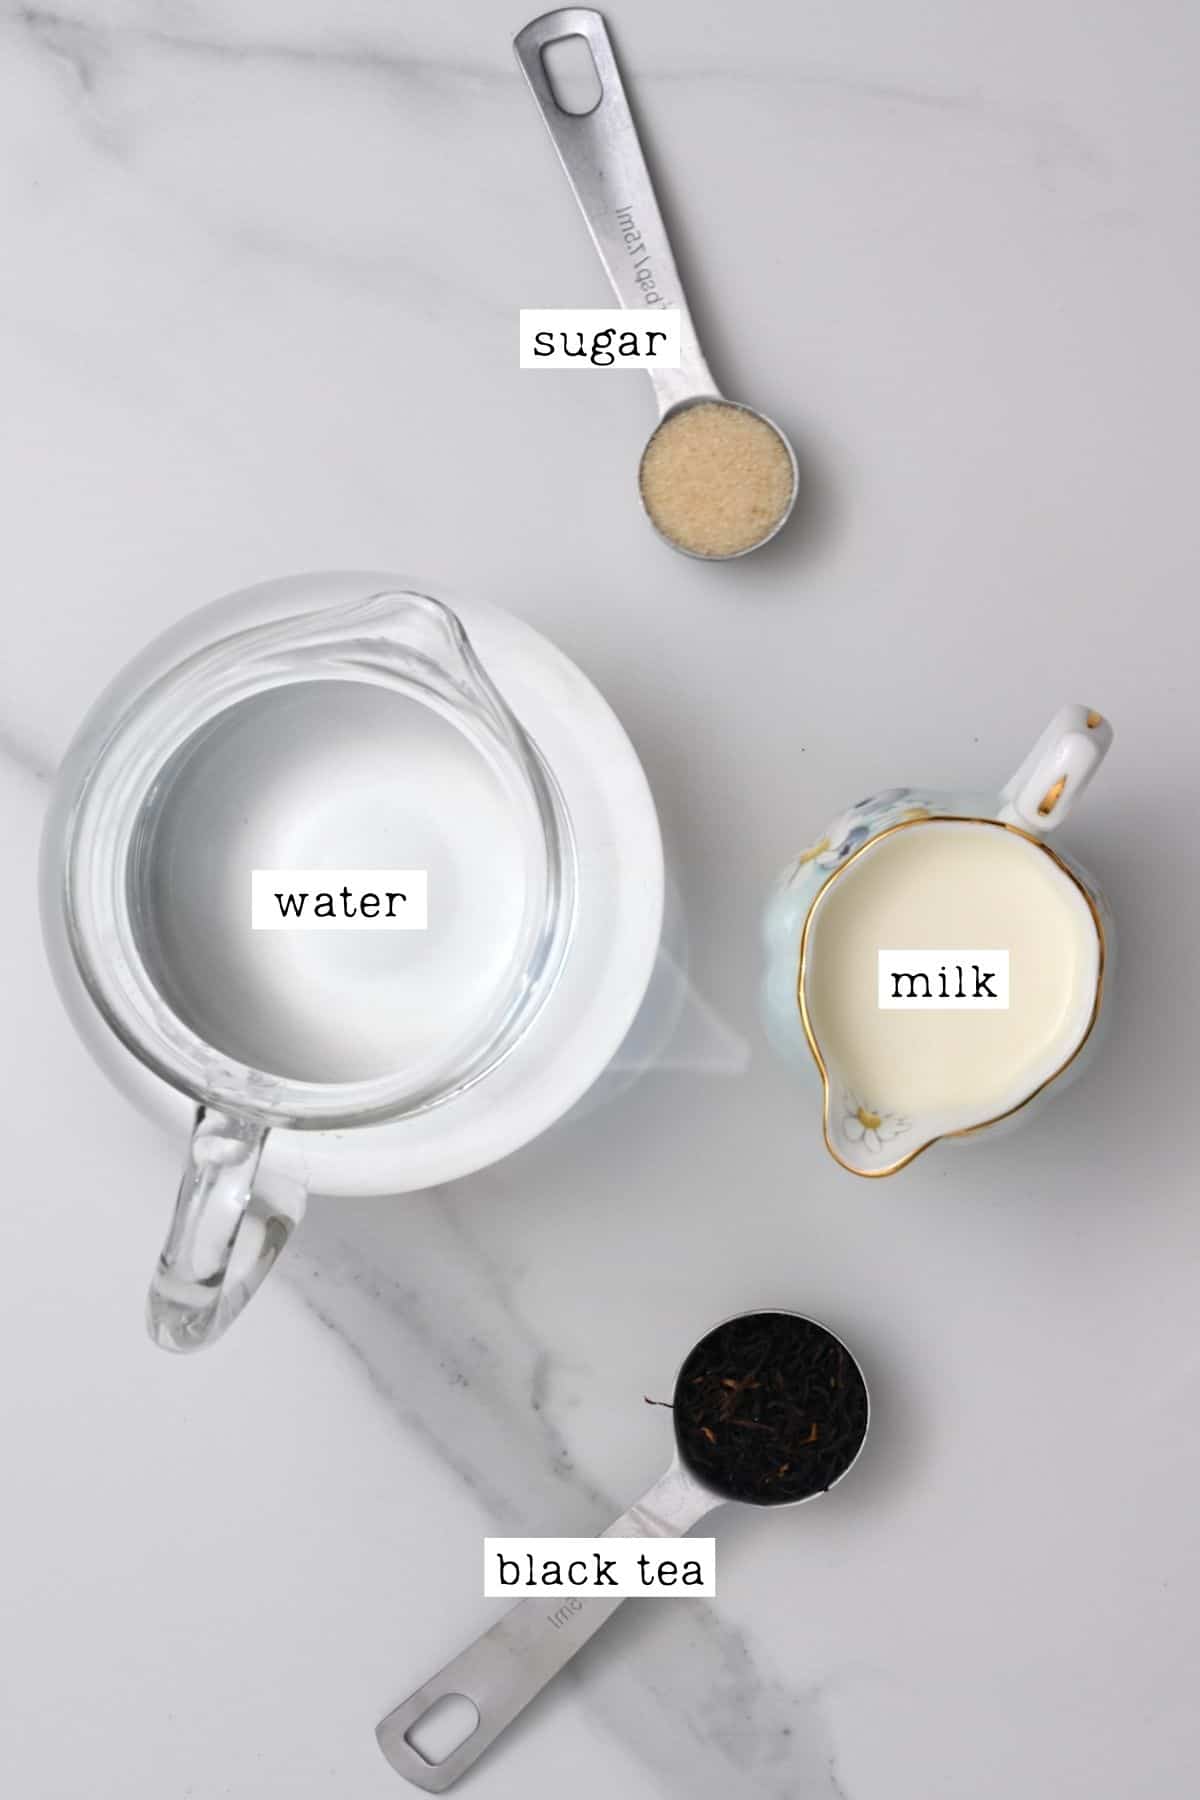 Ingredients for milk tea